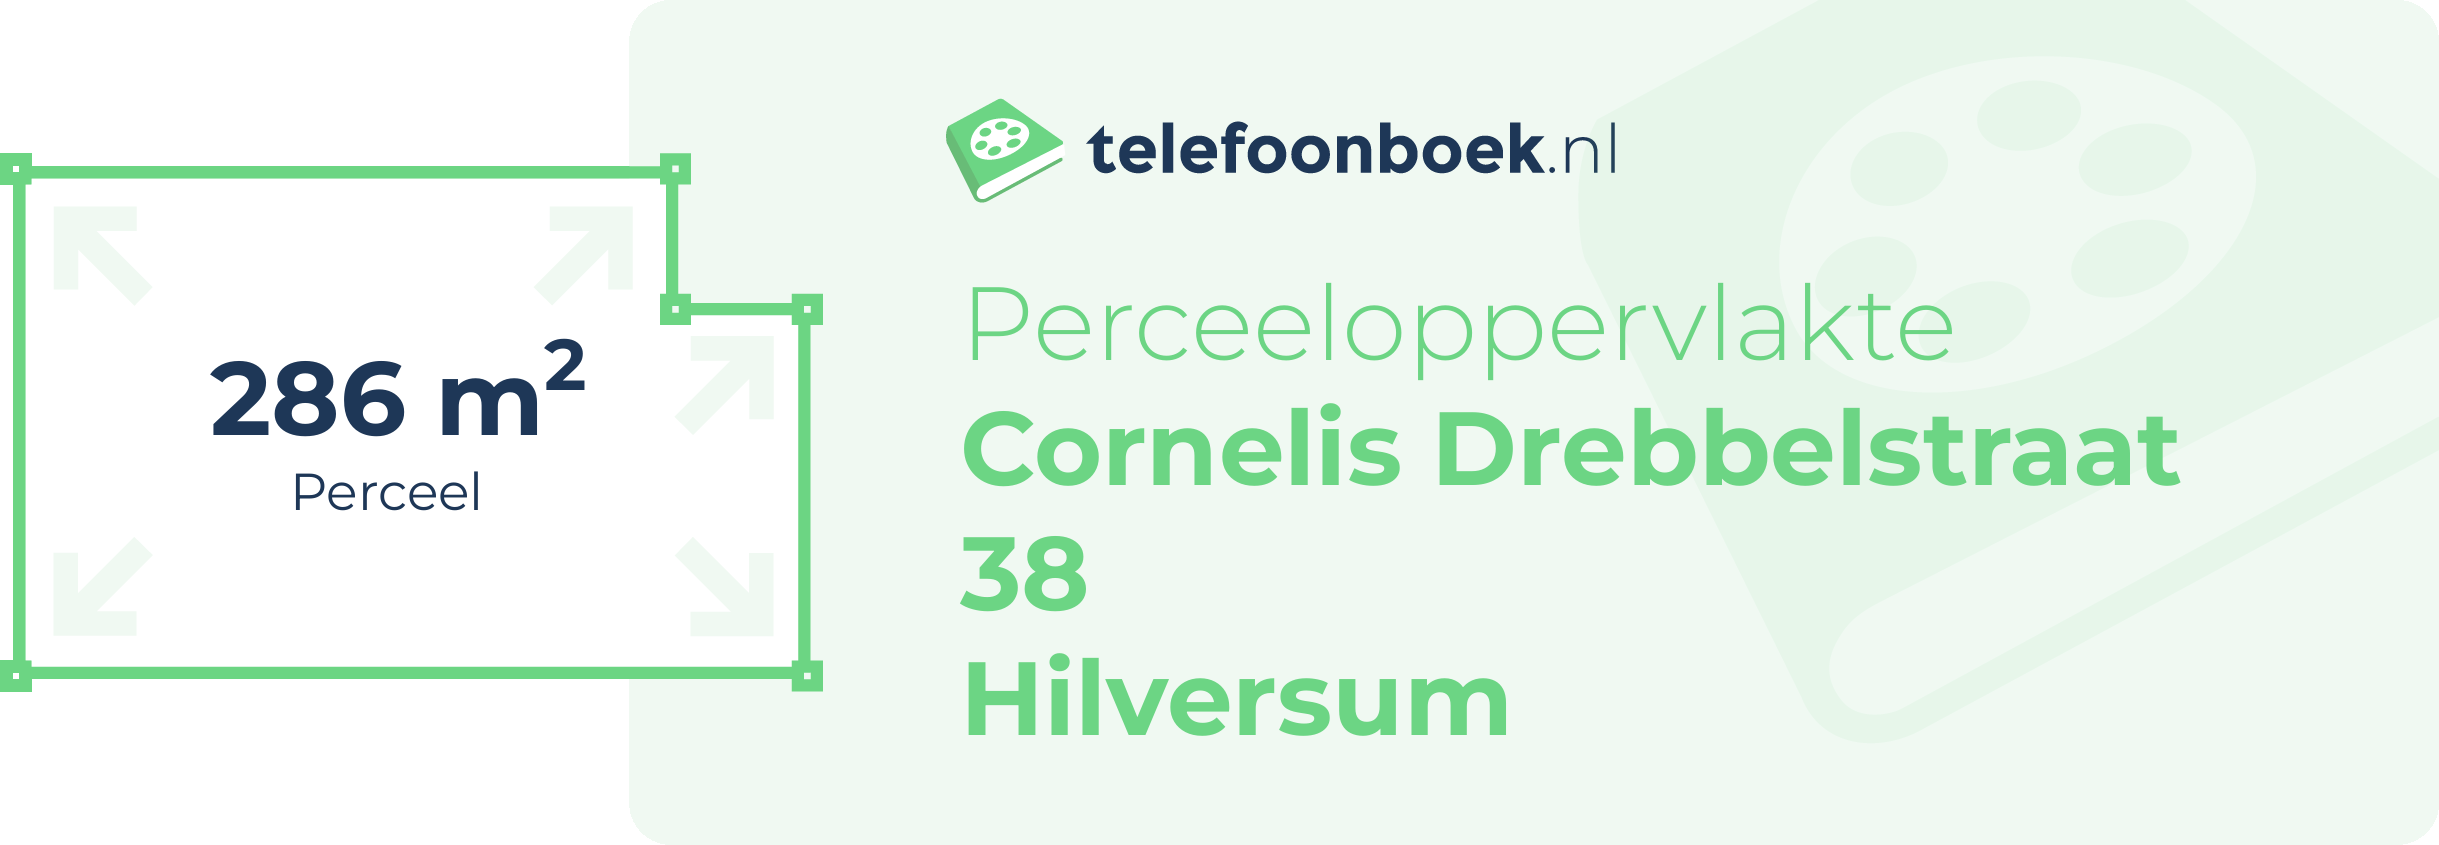 Perceeloppervlakte Cornelis Drebbelstraat 38 Hilversum